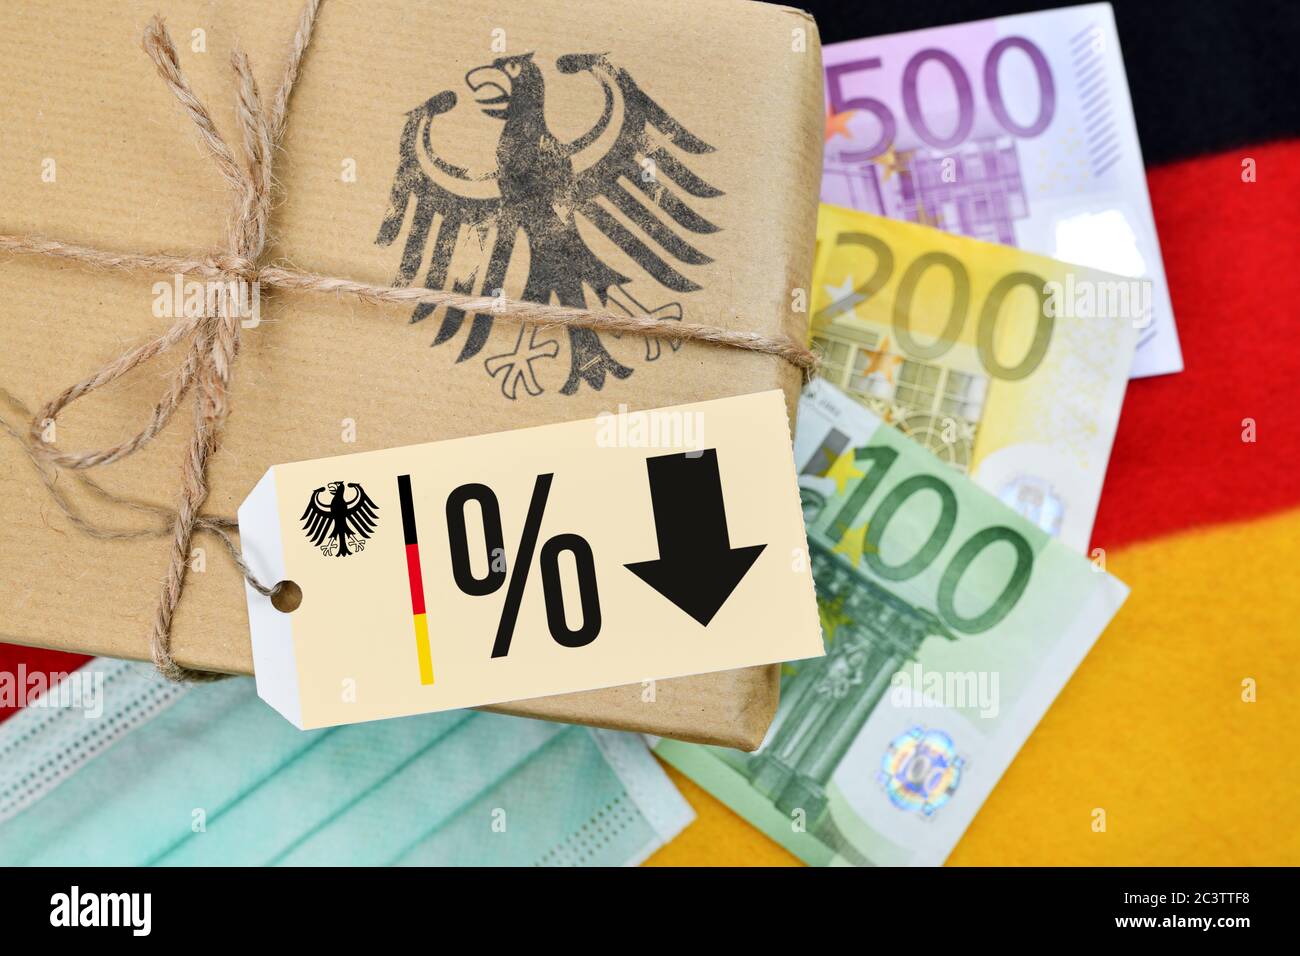 FOTOMONTAJE, Alemania paquete en banner con etiqueta, signo de porcentaje, y símbolo de flecha foto estímulo y reducción del IVA, FOTOMONTAGE, Paket auf Deutsch Foto de stock